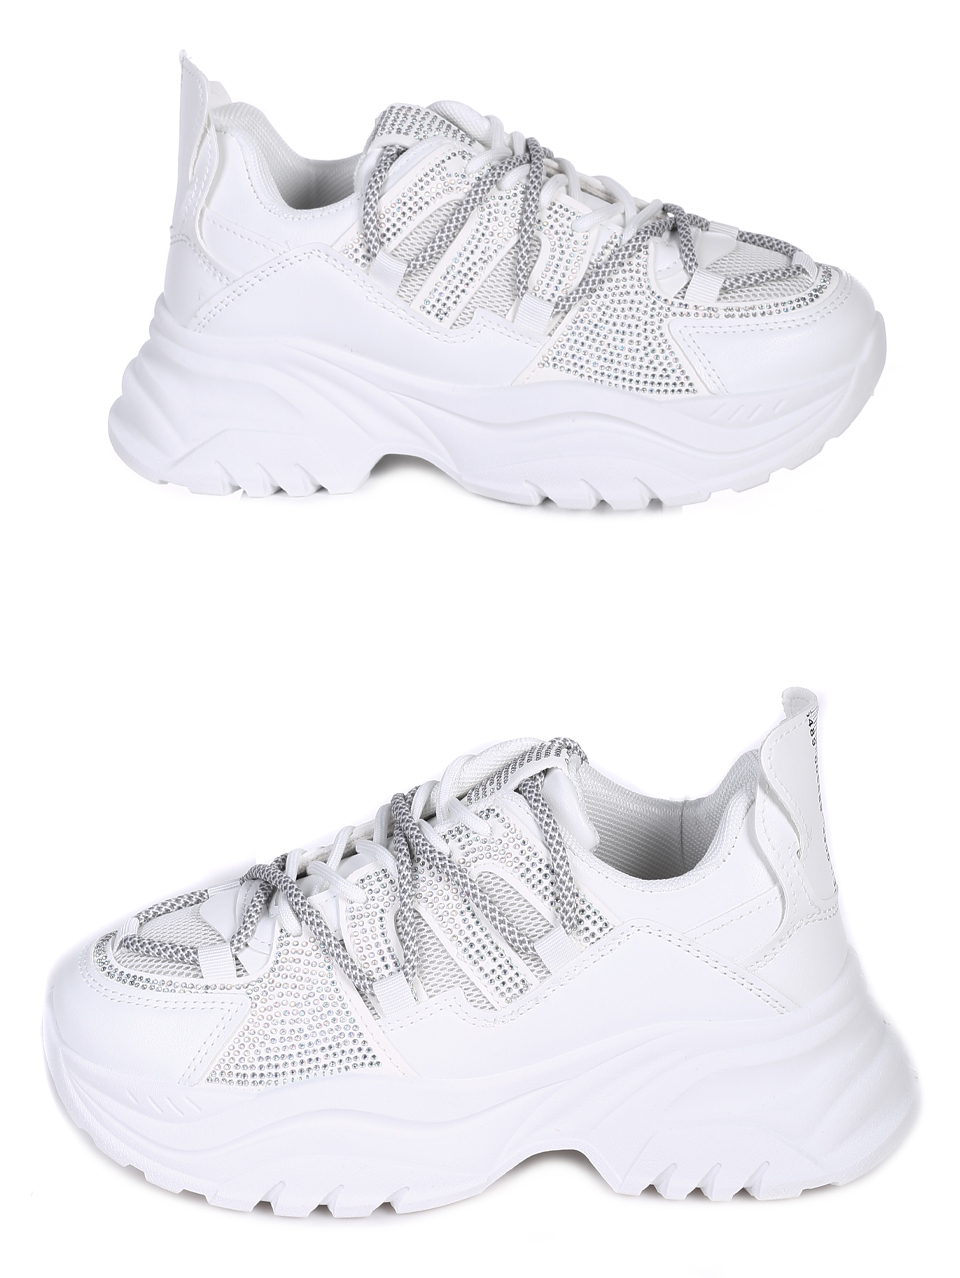 Ежедневни дамски обувки с декоративни камъни в бяло 3U-23690 white